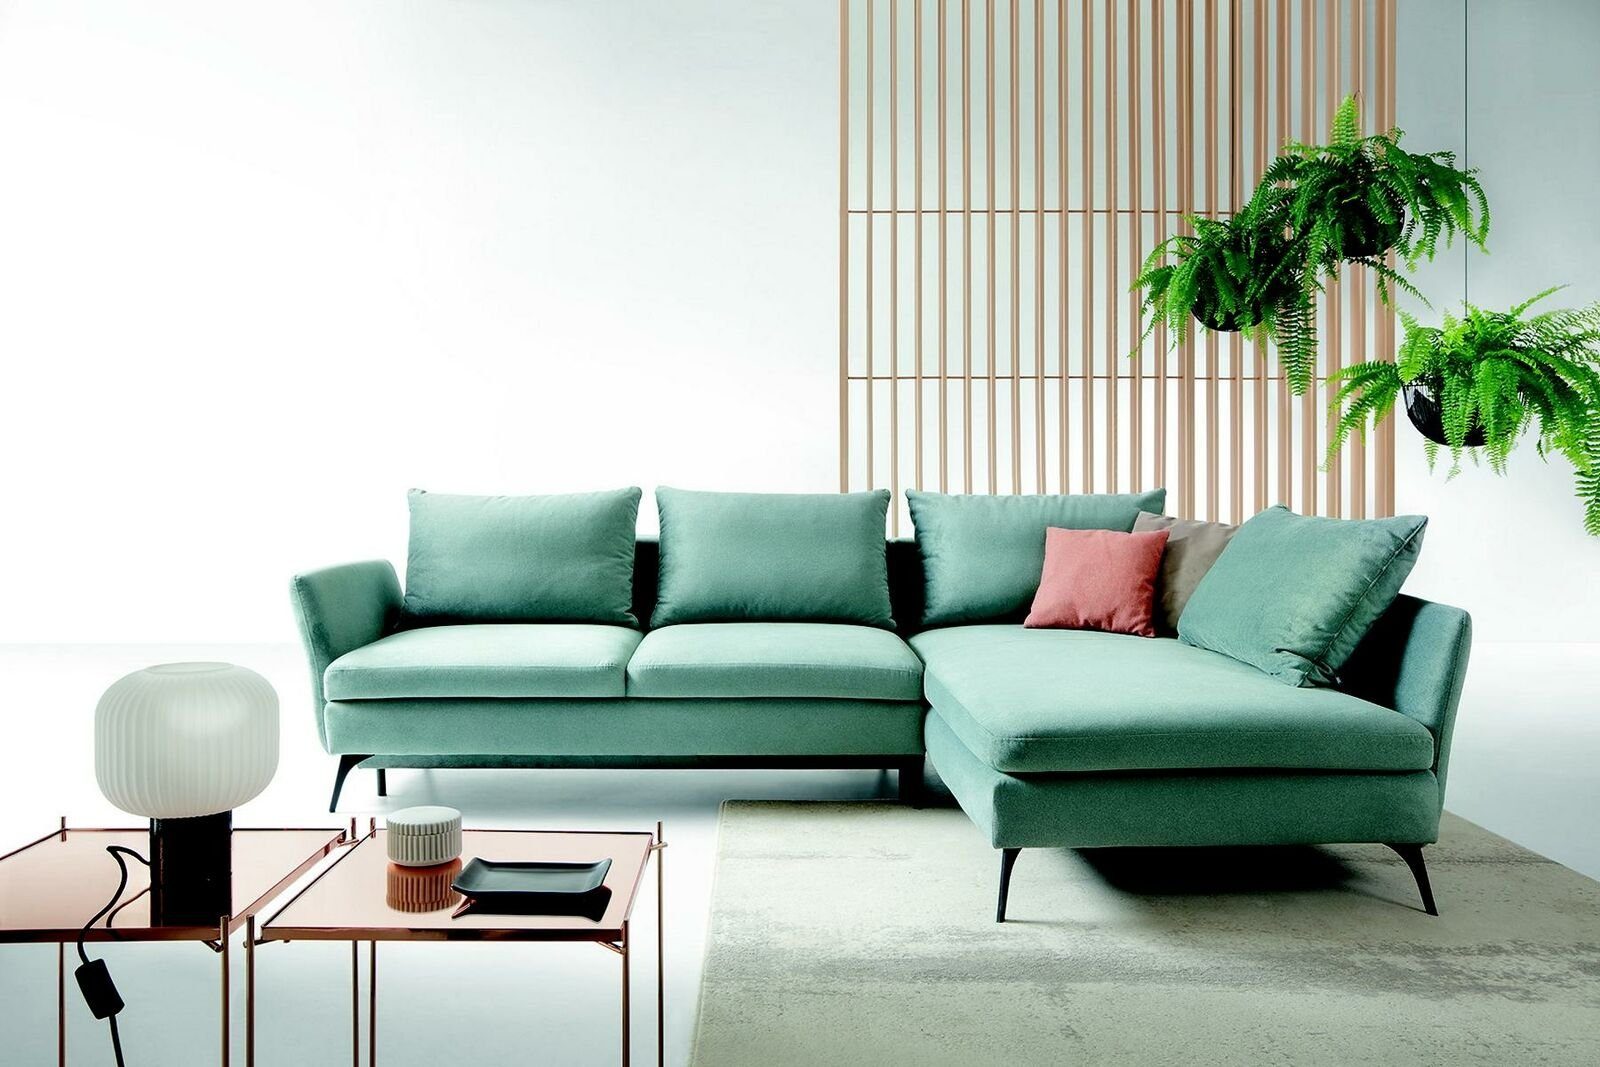 JVmoebel Ecksofa, Wohnzimmer L Sofas Form Couch Ecksofa Grün Möbel Textil